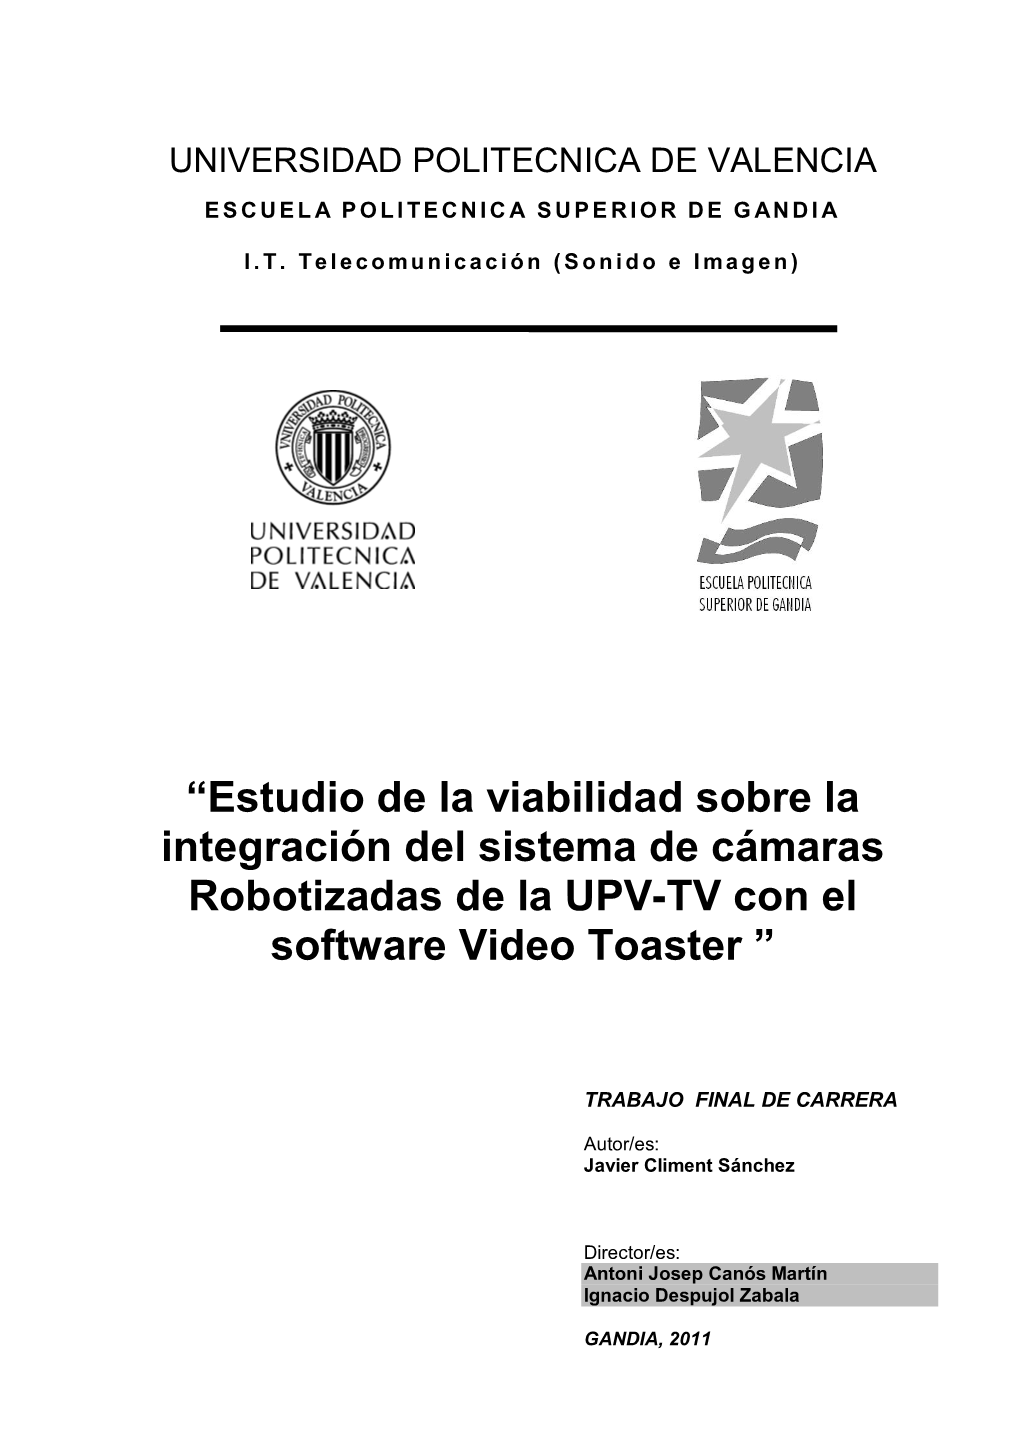 Estudio De La Viabilidad Sobre La Integración Del Sistema De Cámaras Robotizadas De La UPV-TV Con El Software Video Toaster ”